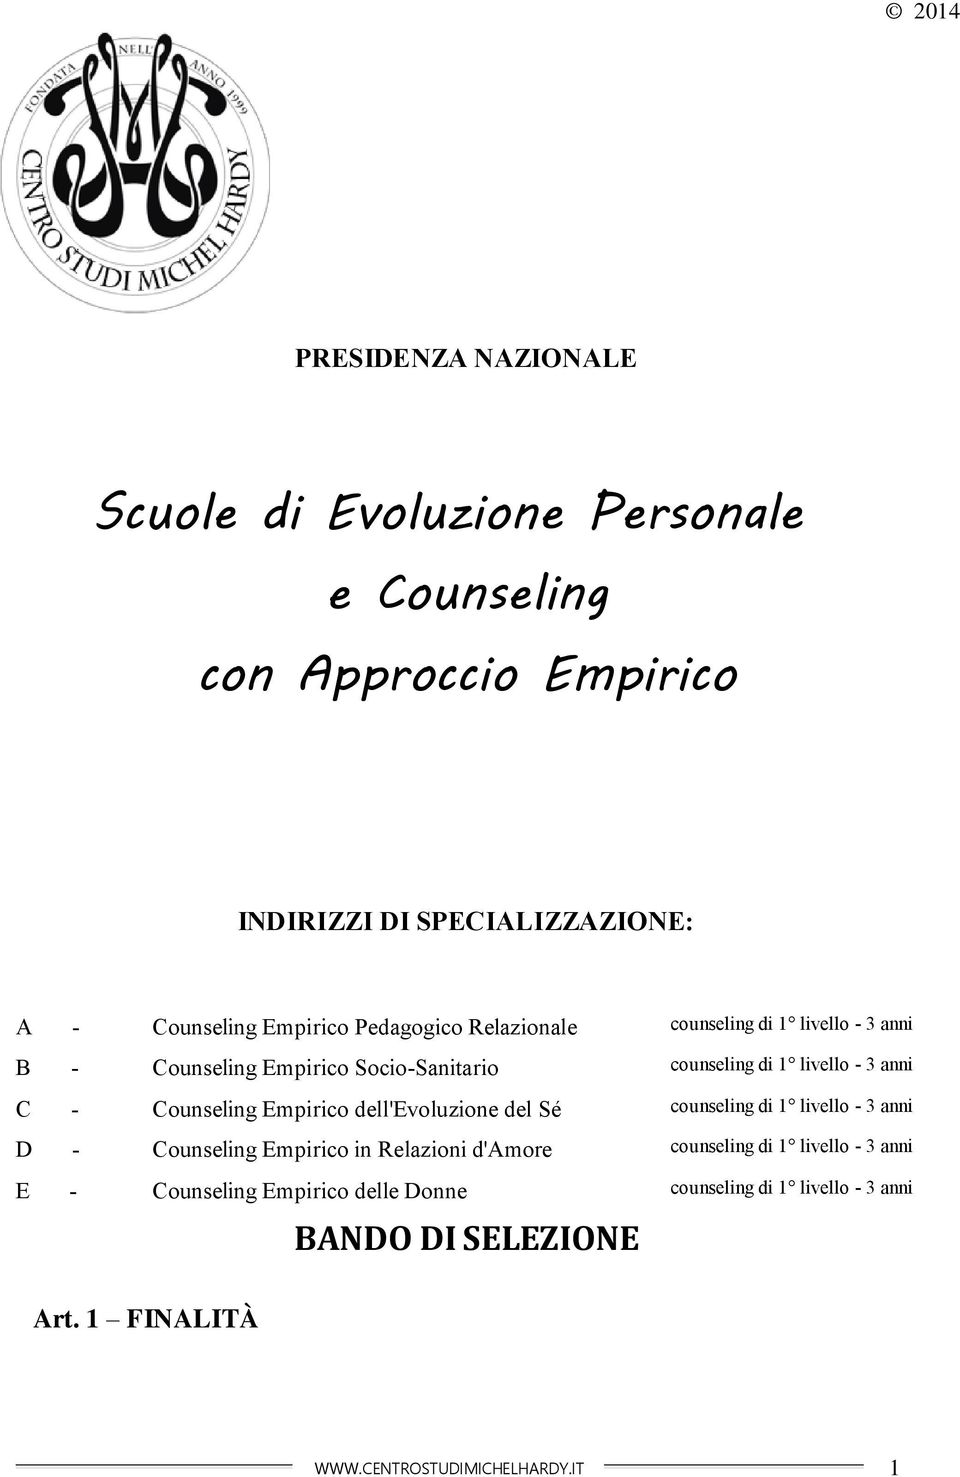 Counseling Empirico dell'evoluzione del Sé counseling di 1 livello - 3 anni D - Counseling Empirico in Relazioni d'amore counseling di 1